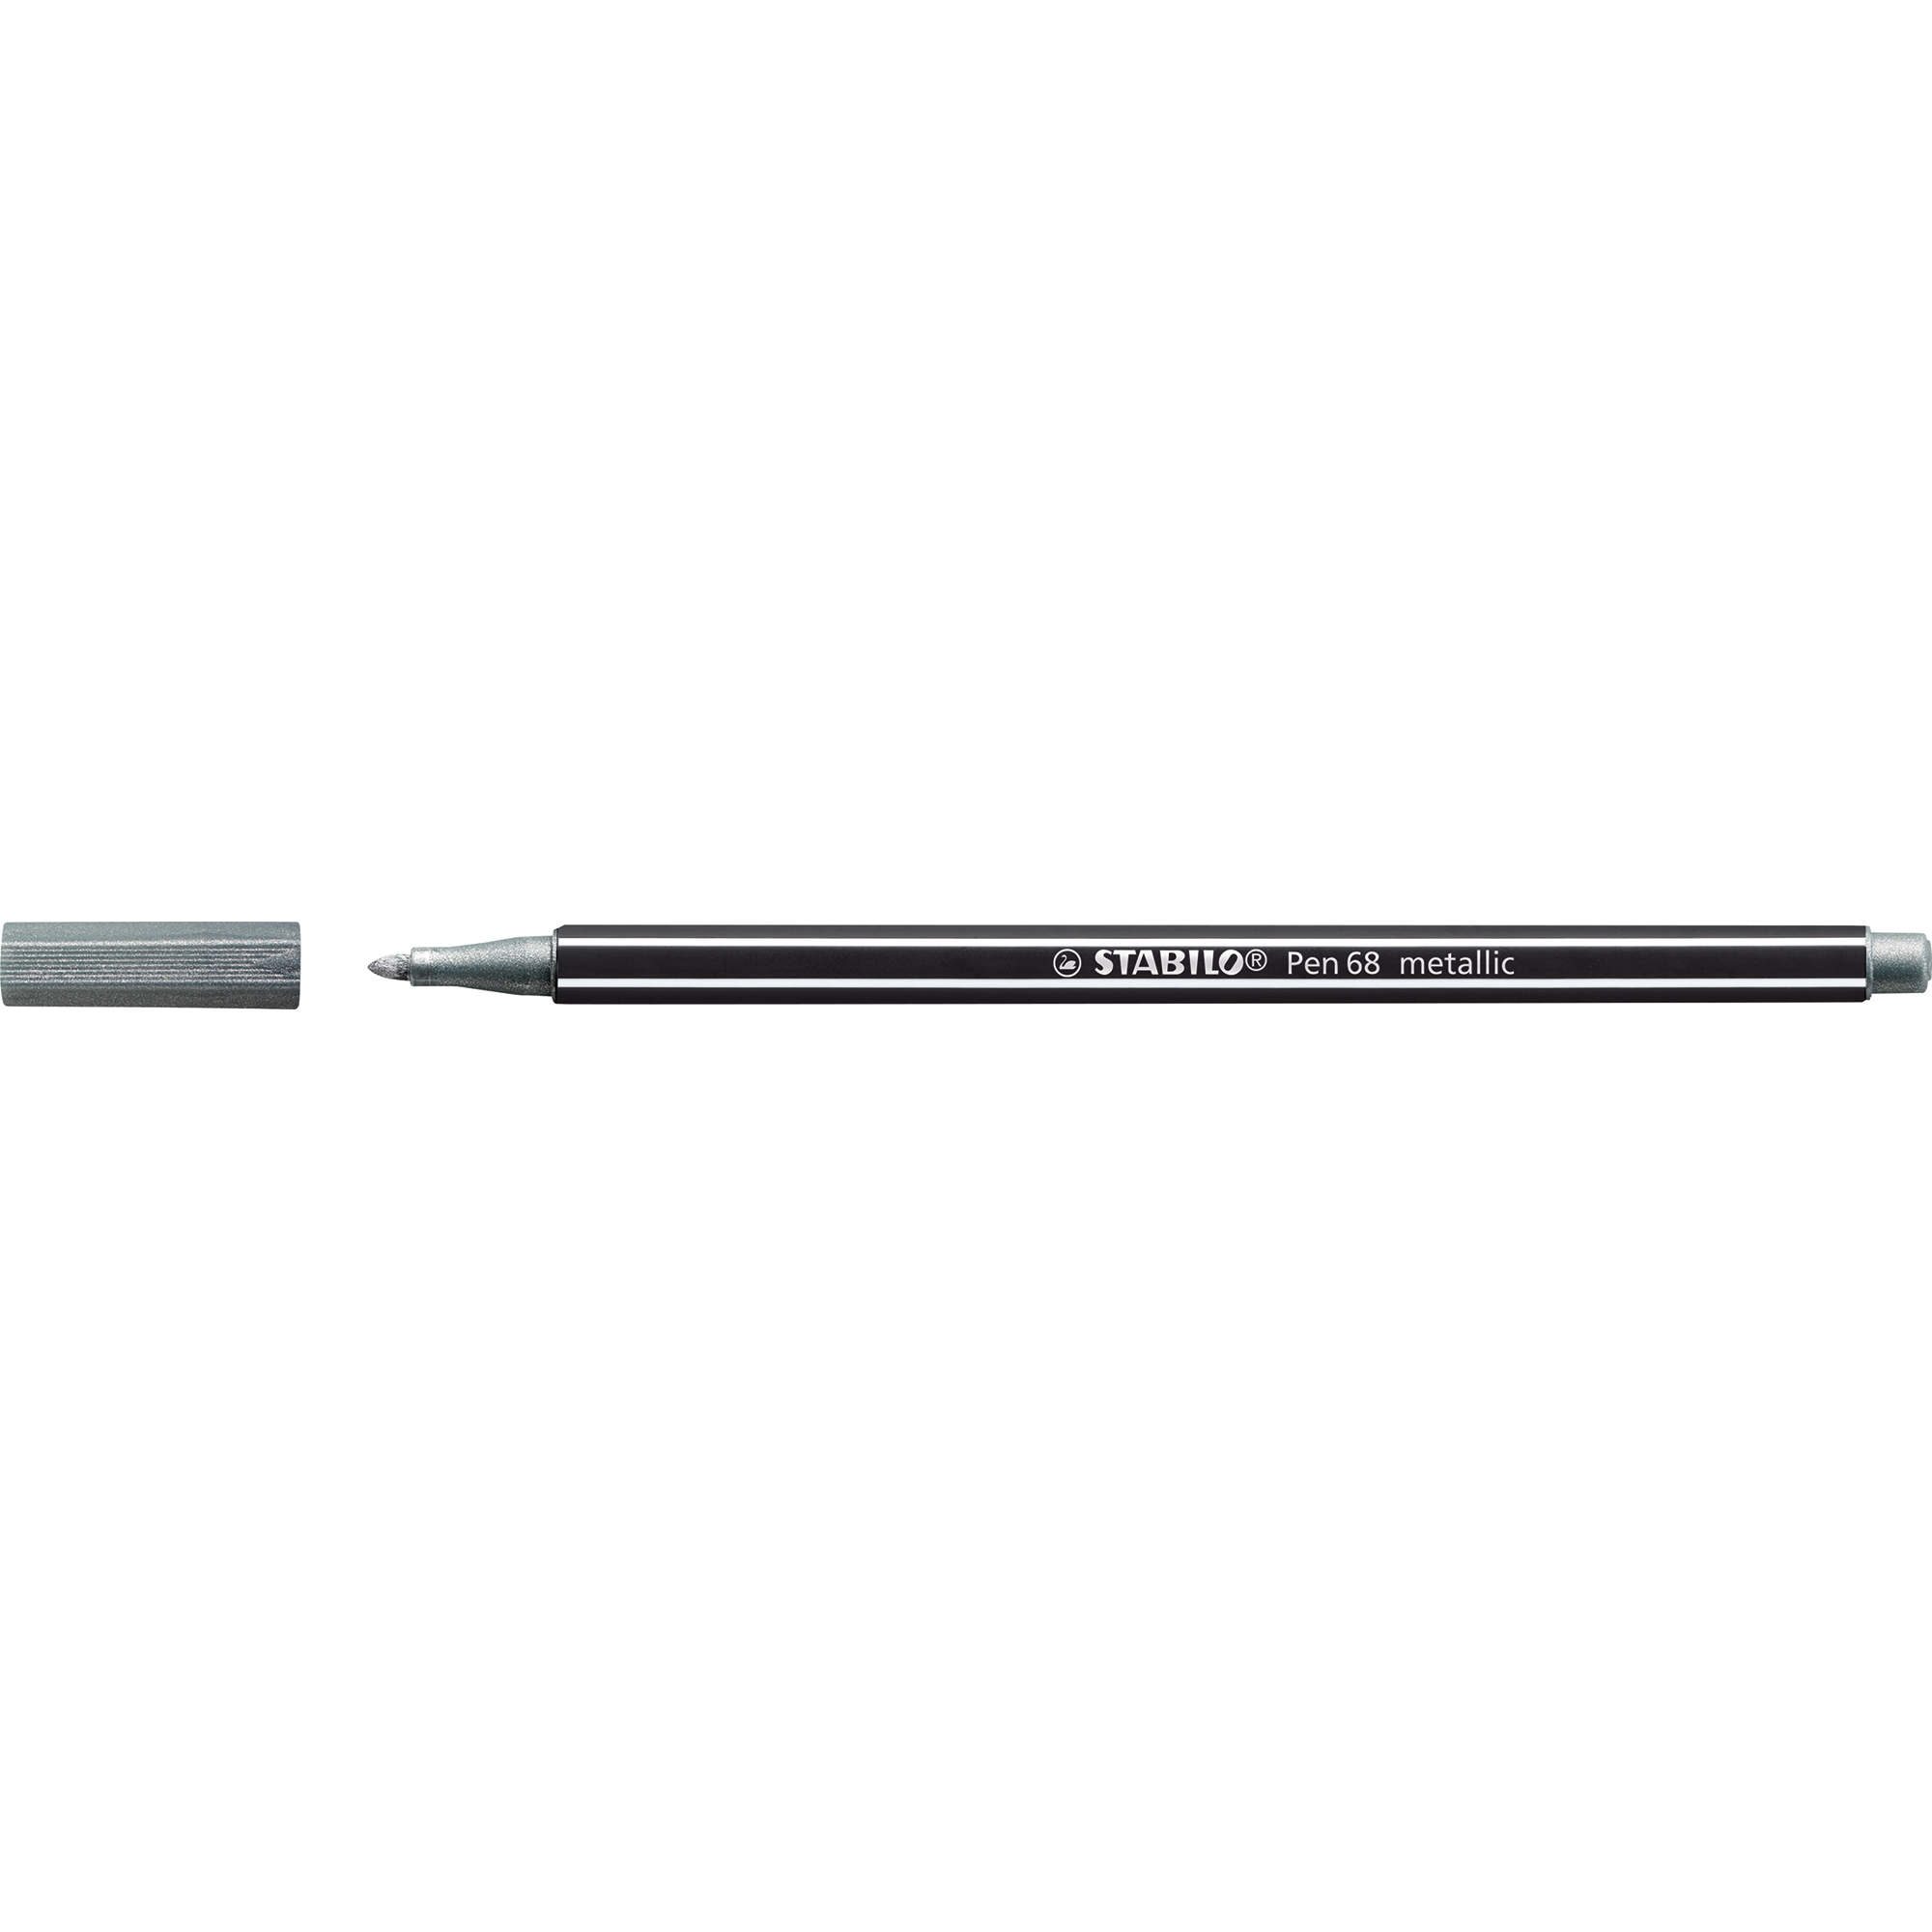 STABILO® Fasermaler Pen 68 metallic silber